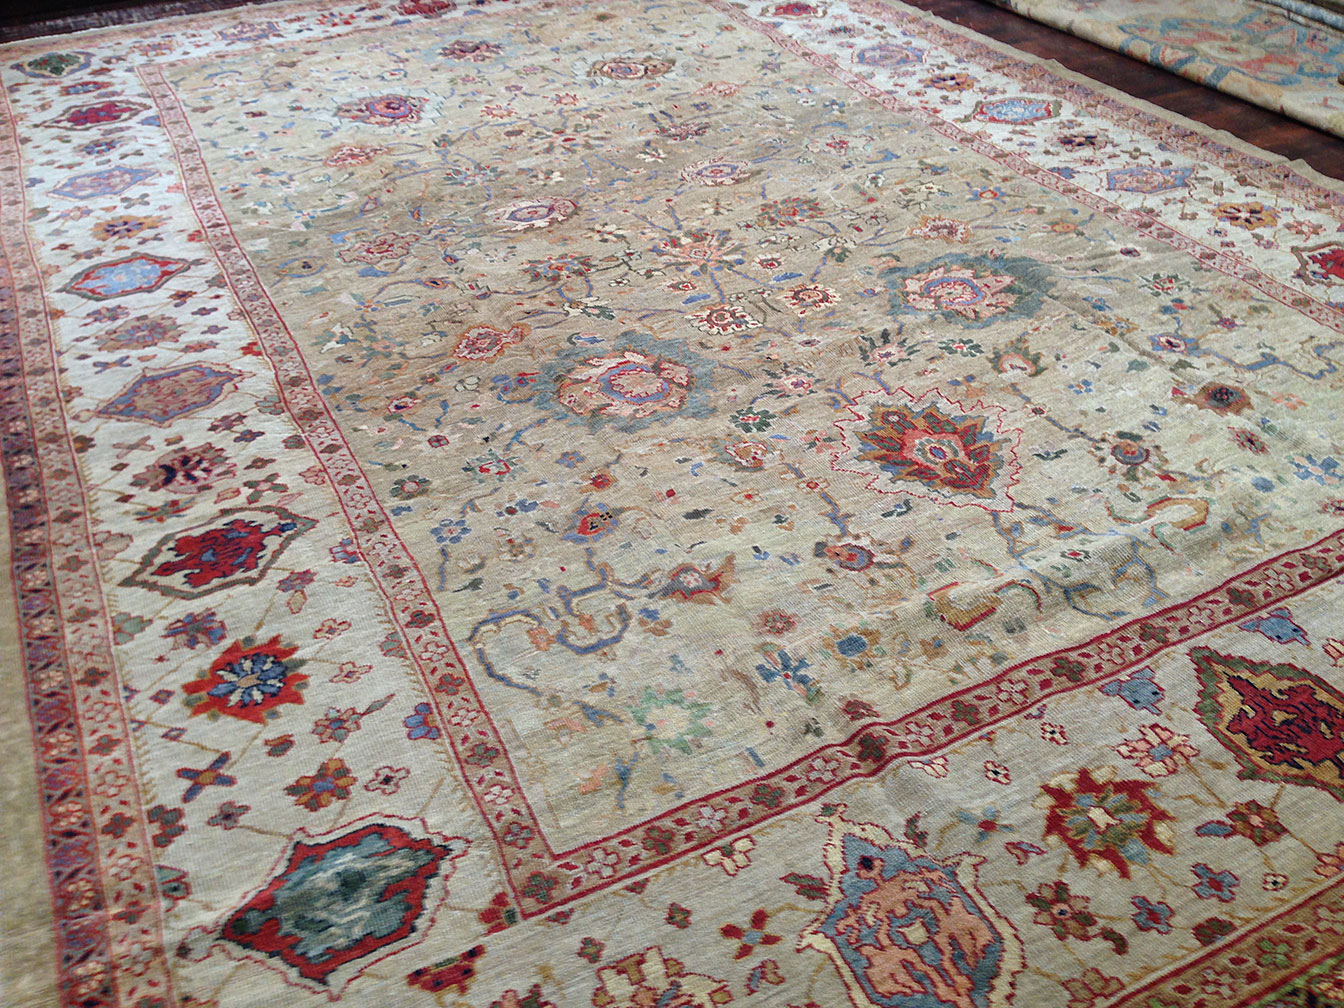 Antique mahal Carpet - # 11037